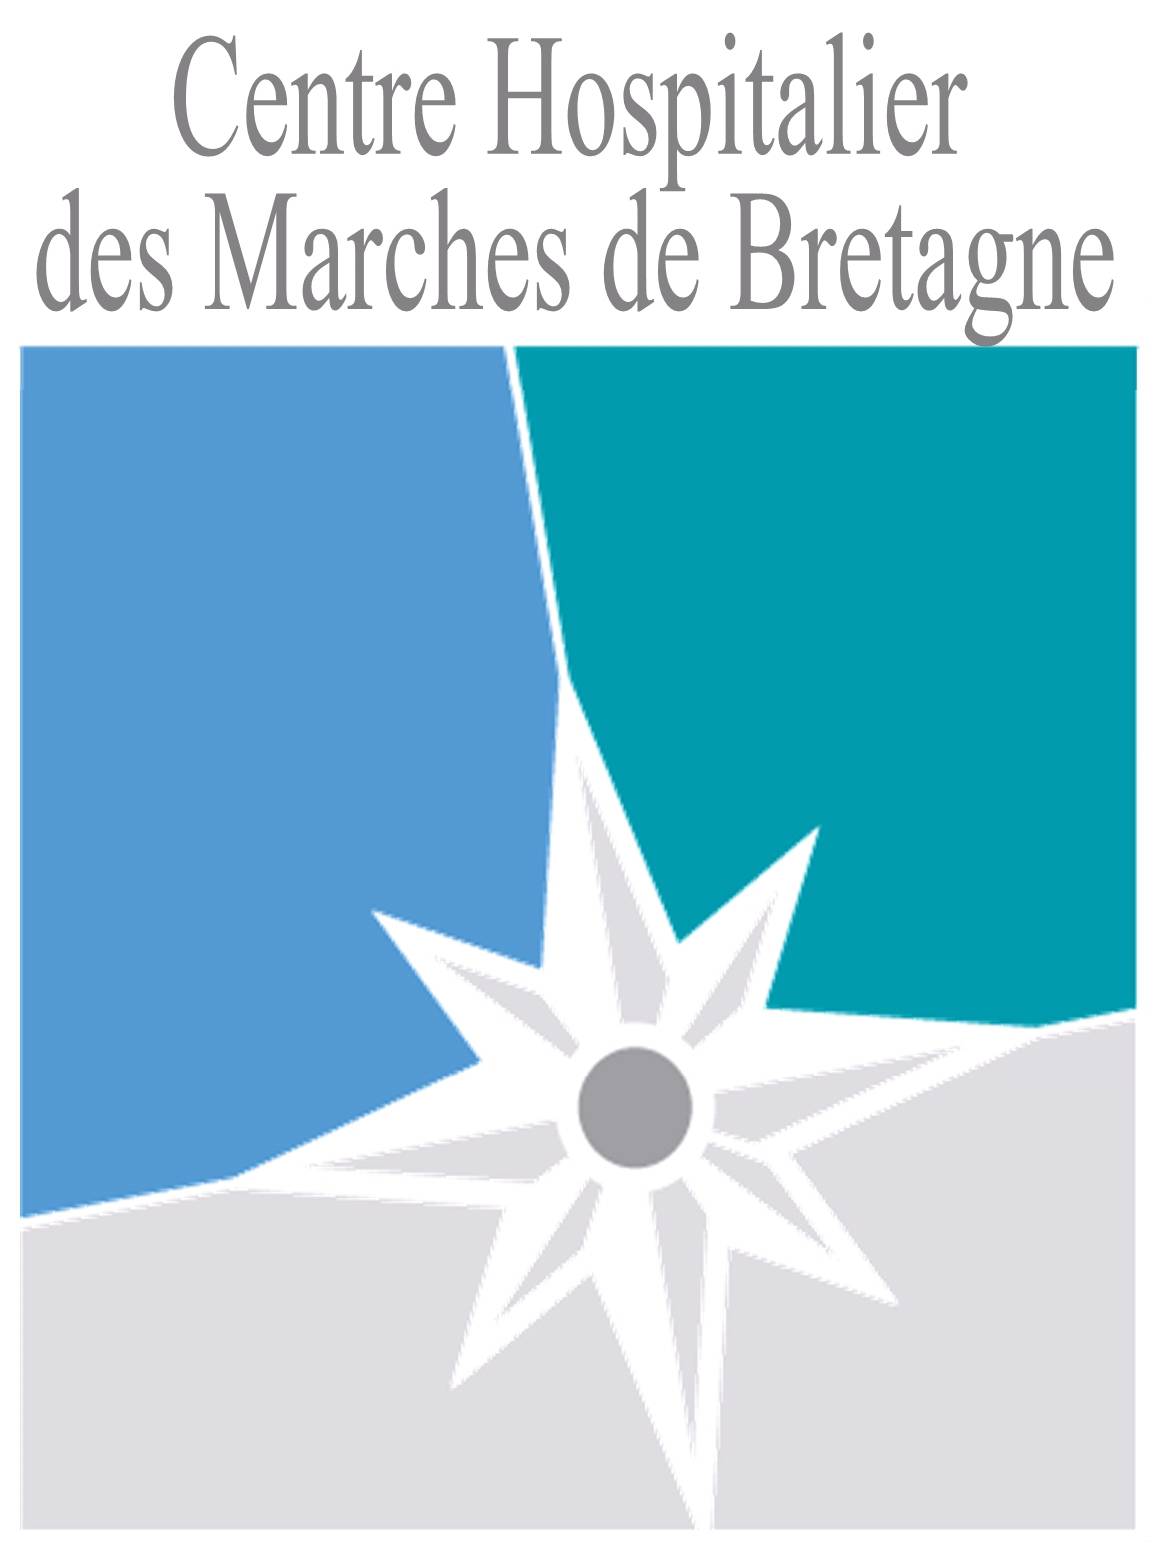 Centre Hospitalier des Marches de Bretagne